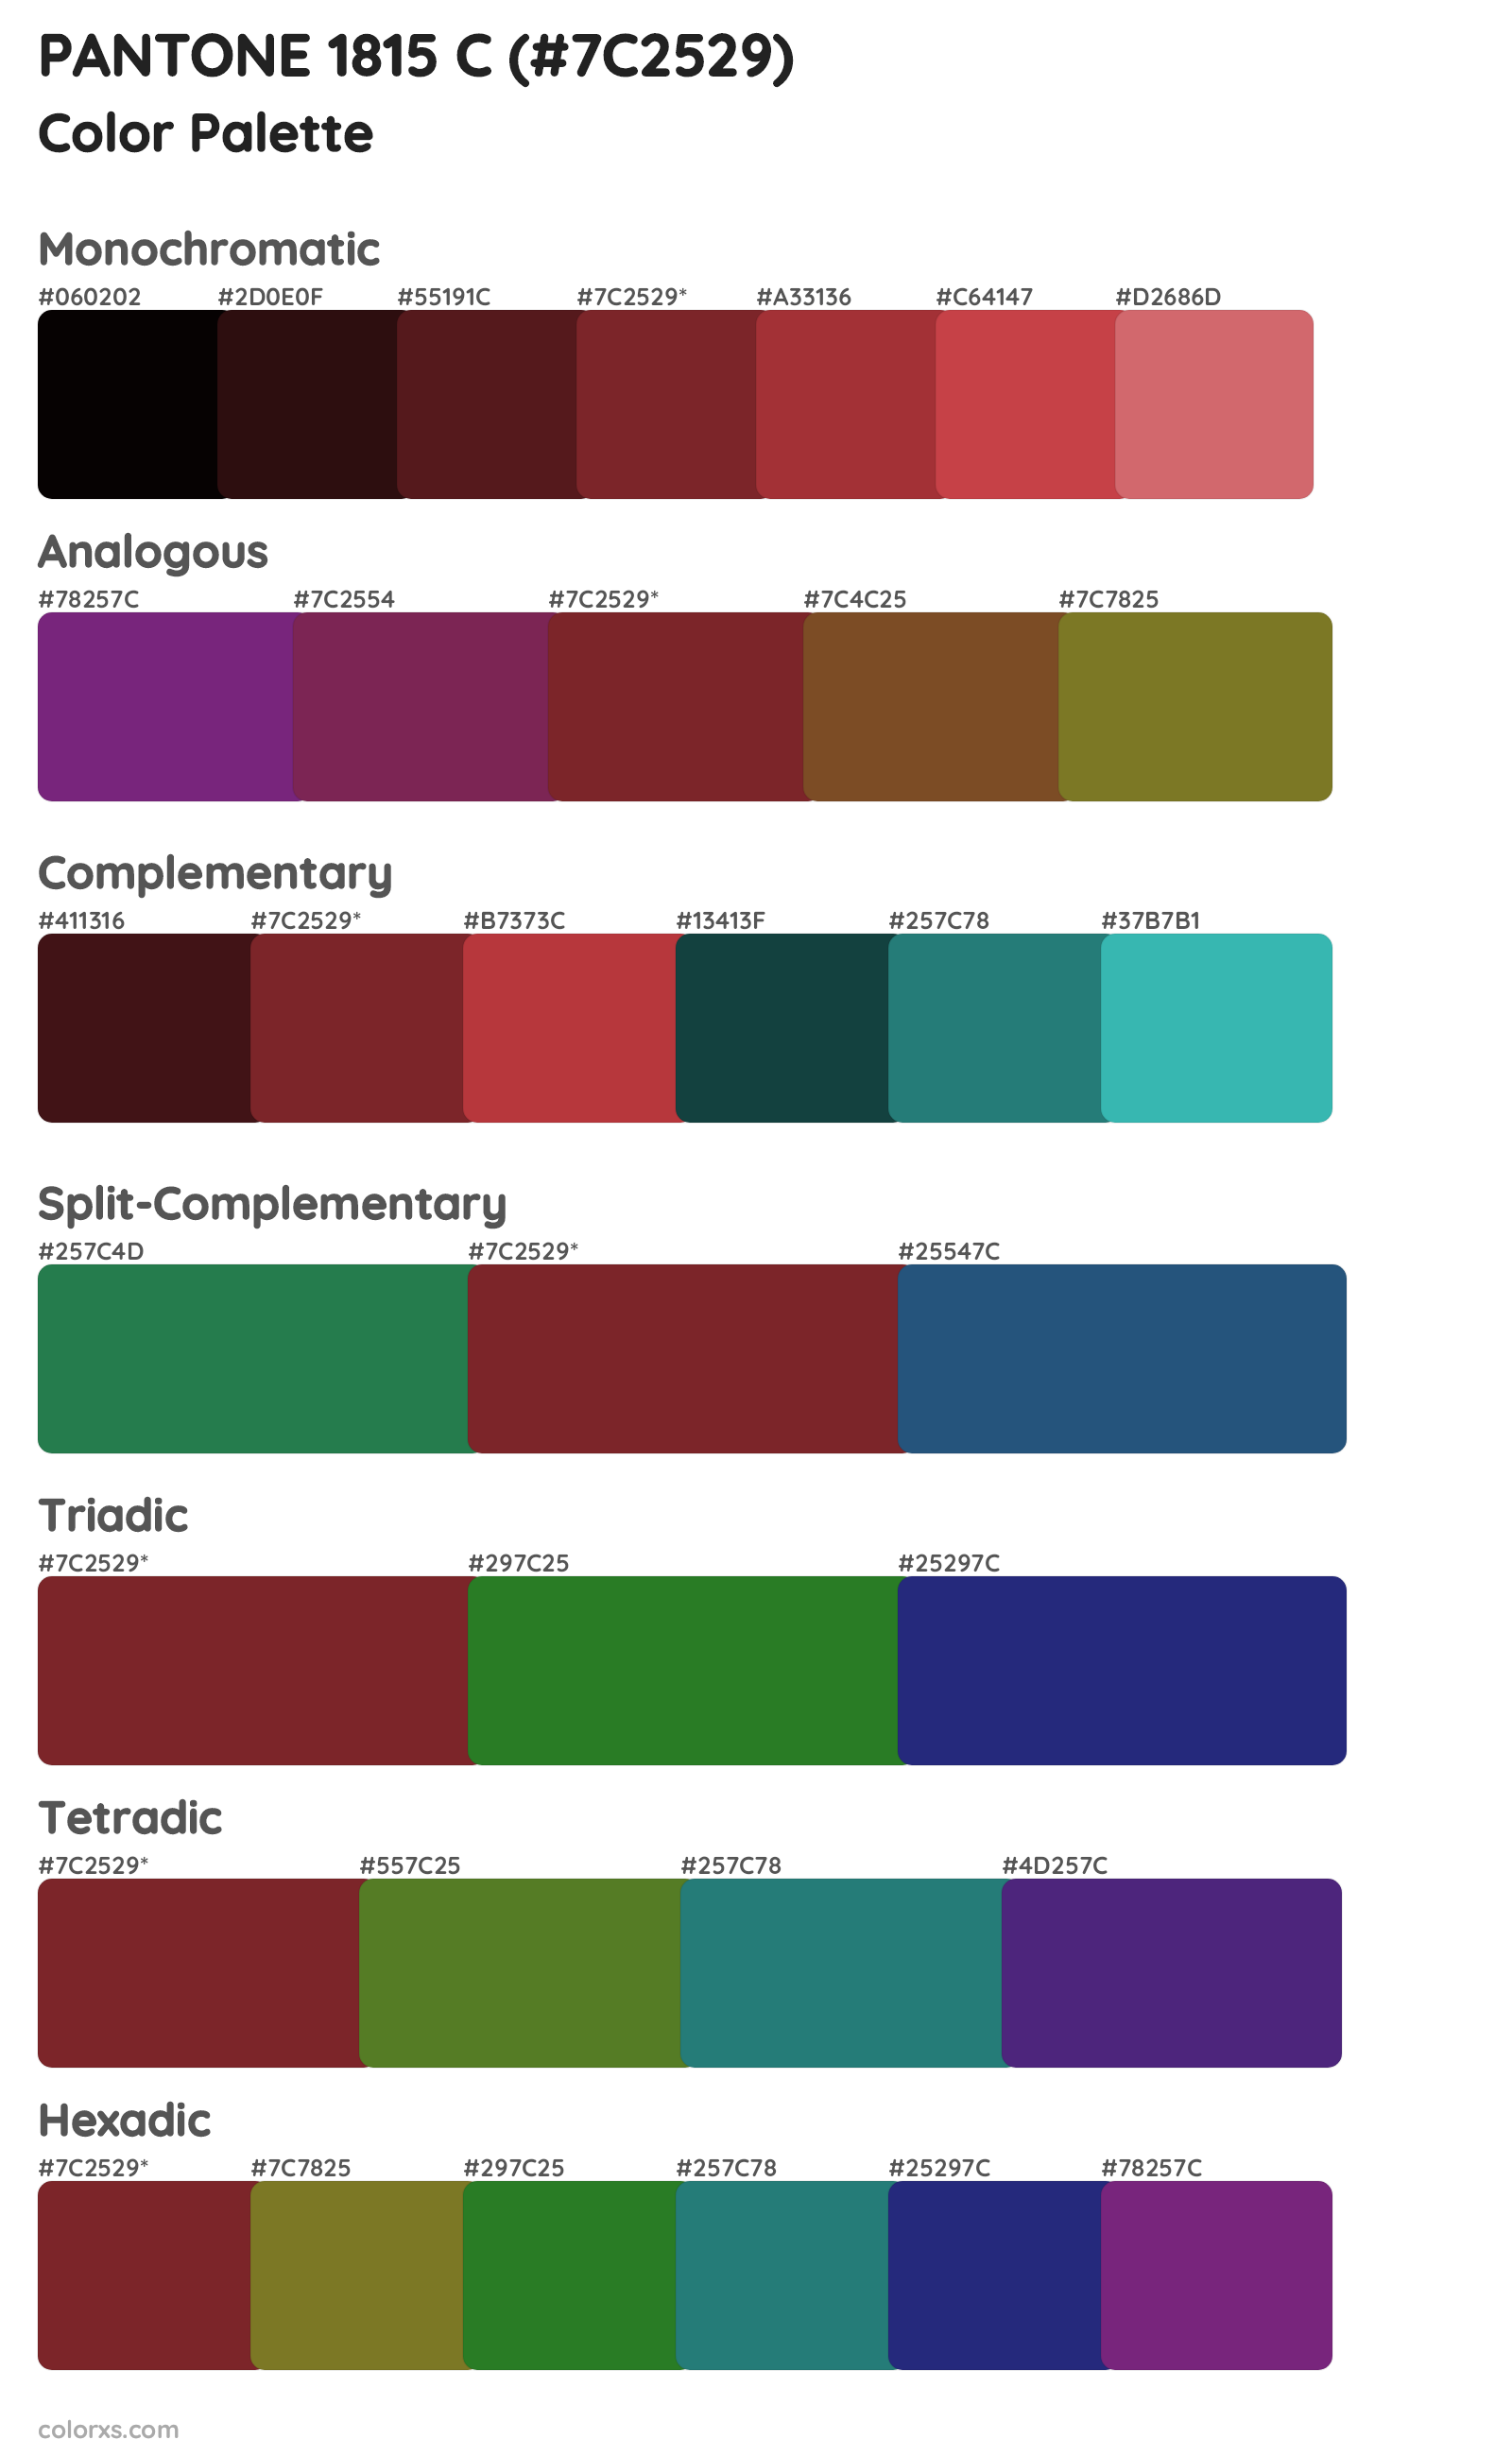 PANTONE 1815 C Color Scheme Palettes